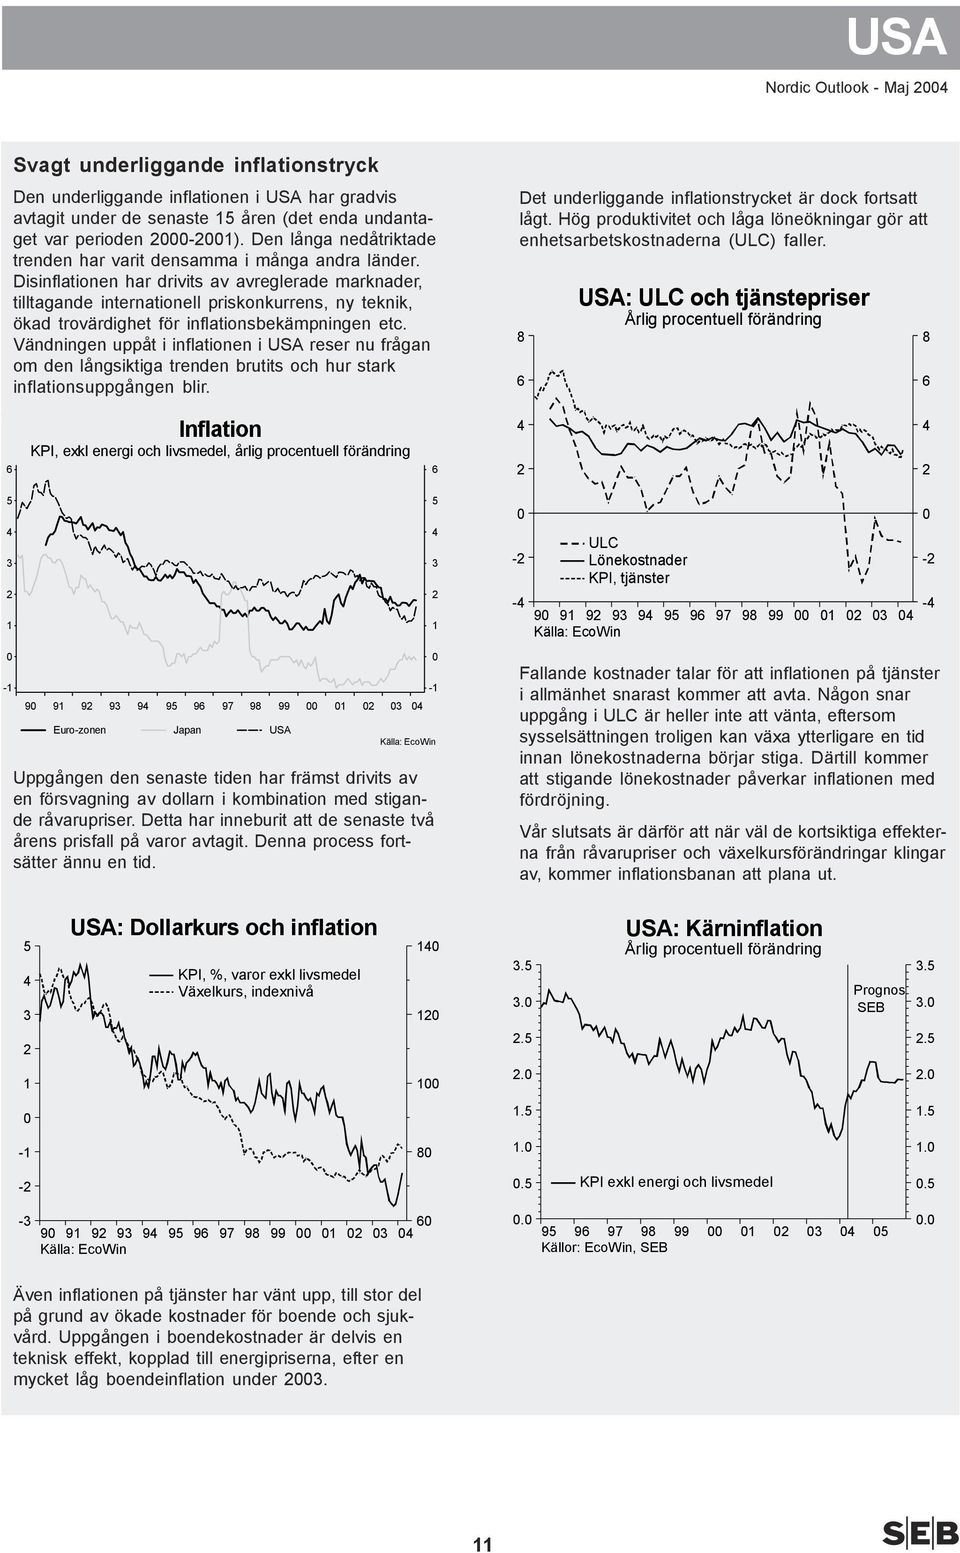 Disinflationen har drivits av avreglerade marknader, tilltagande internationell priskonkurrens, ny teknik, ökad trovärdighet för inflationsbekämpningen etc.